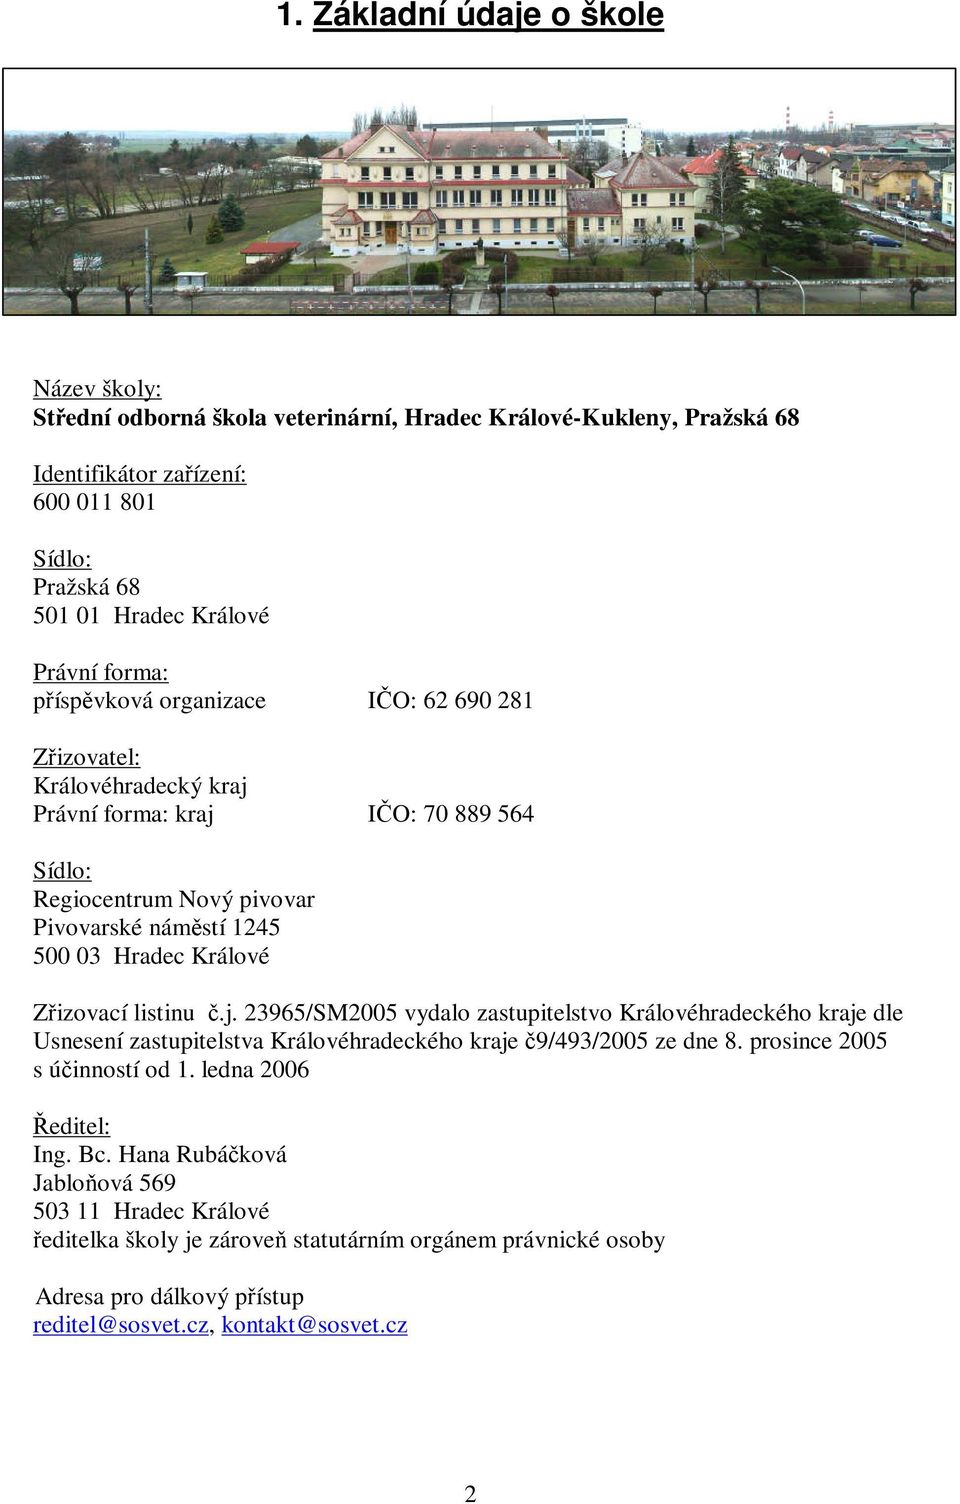 Zřizovací listinu č.j. 23965/SM2005 vydalo zastupitelstvo Královéhradeckého kraje dle Usnesení zastupitelstva Královéhradeckého kraje č9/493/2005 ze dne 8. prosince 2005 s účinností od 1.